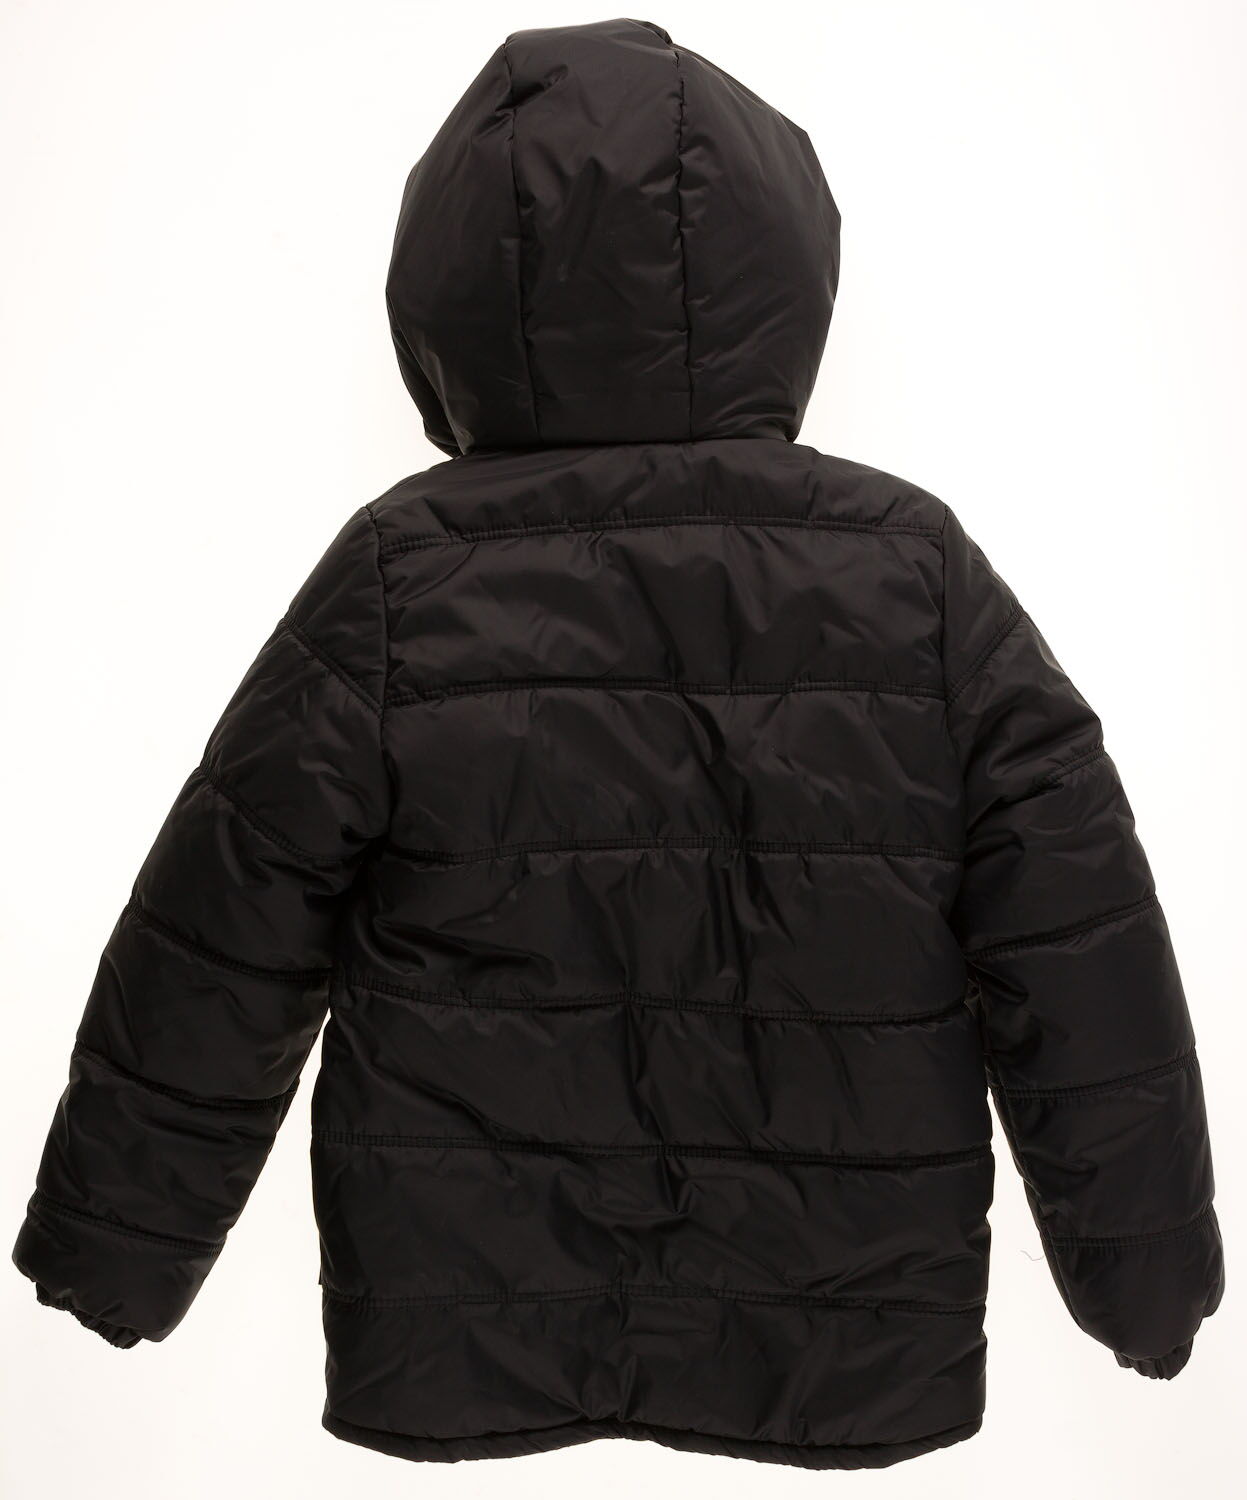 Куртка зимняя для мальчика Одягайко черная 20046 - размеры